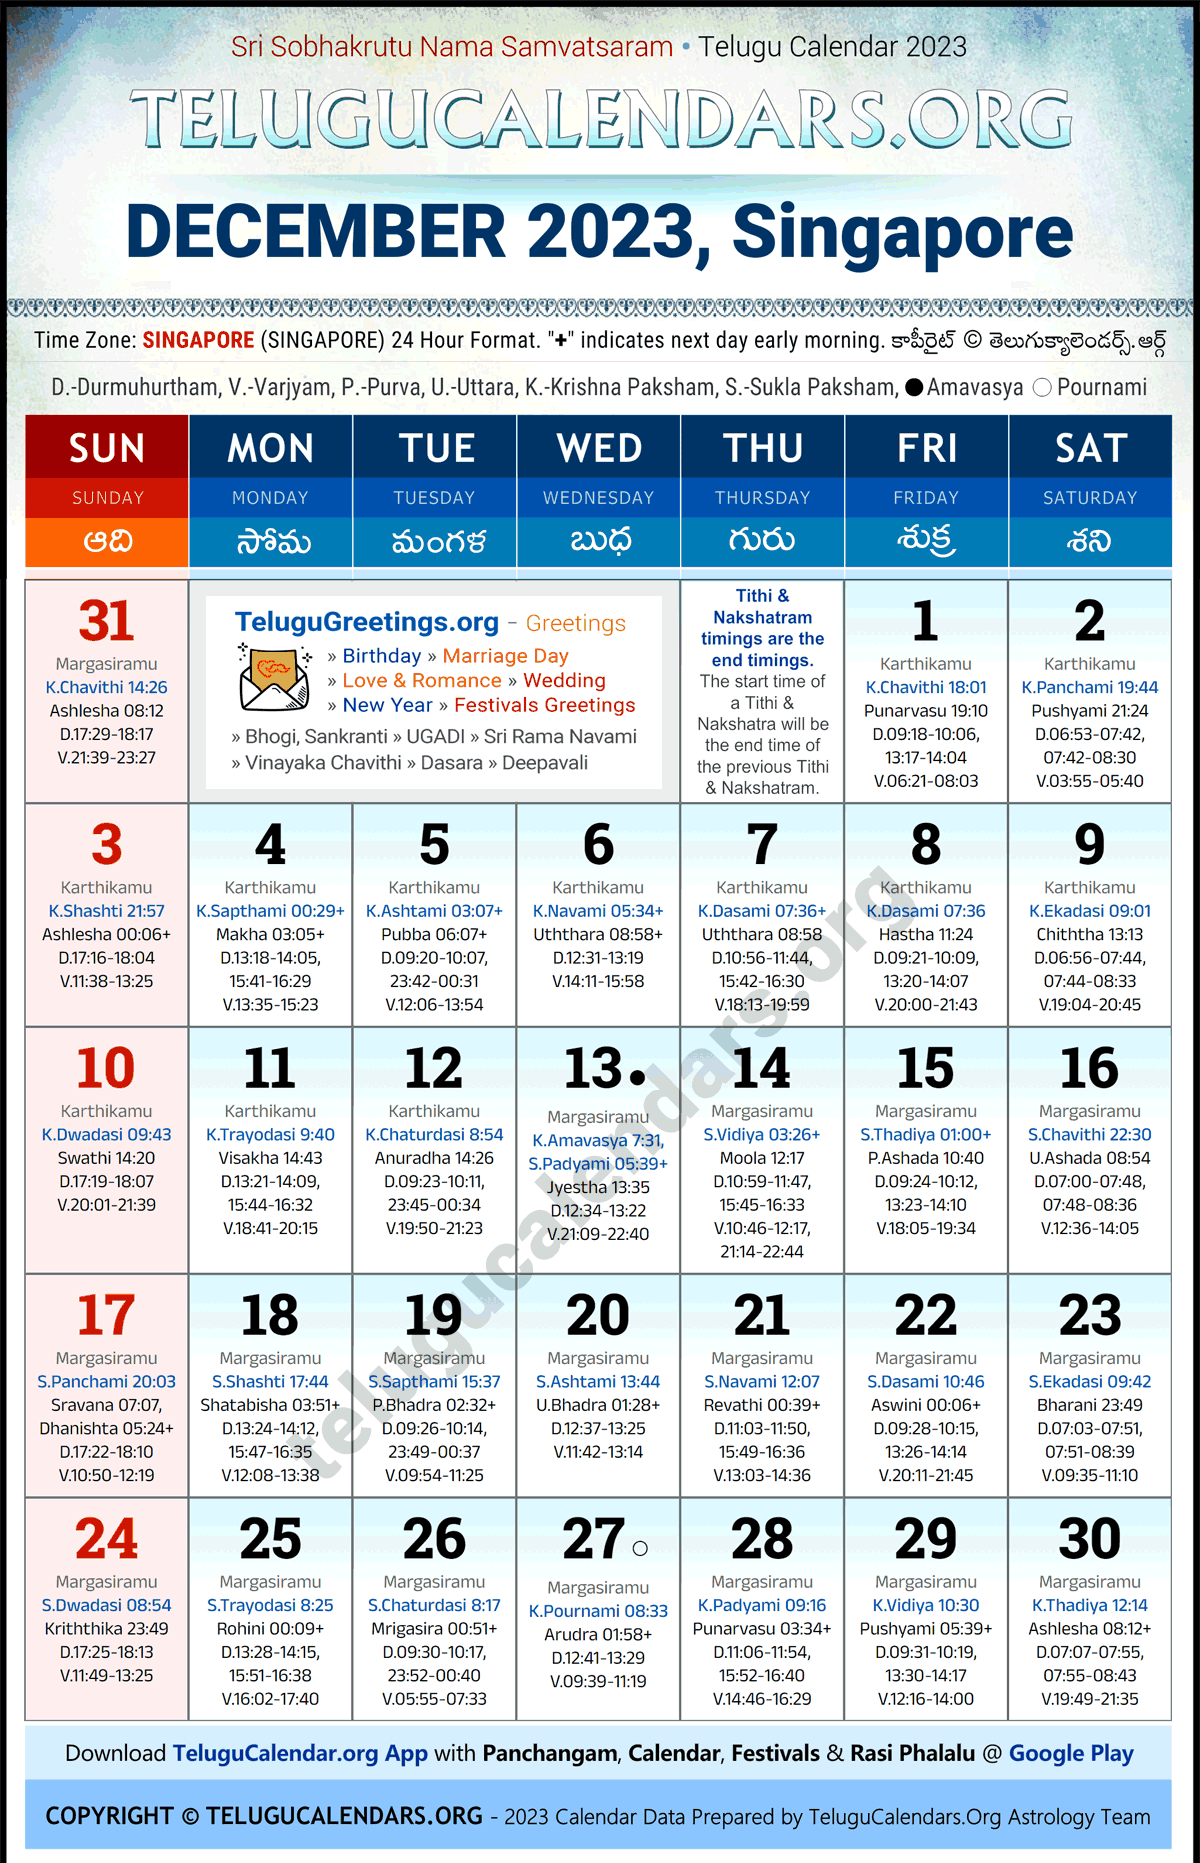 Telugu Calendar 2023 December Festivals for Singapore